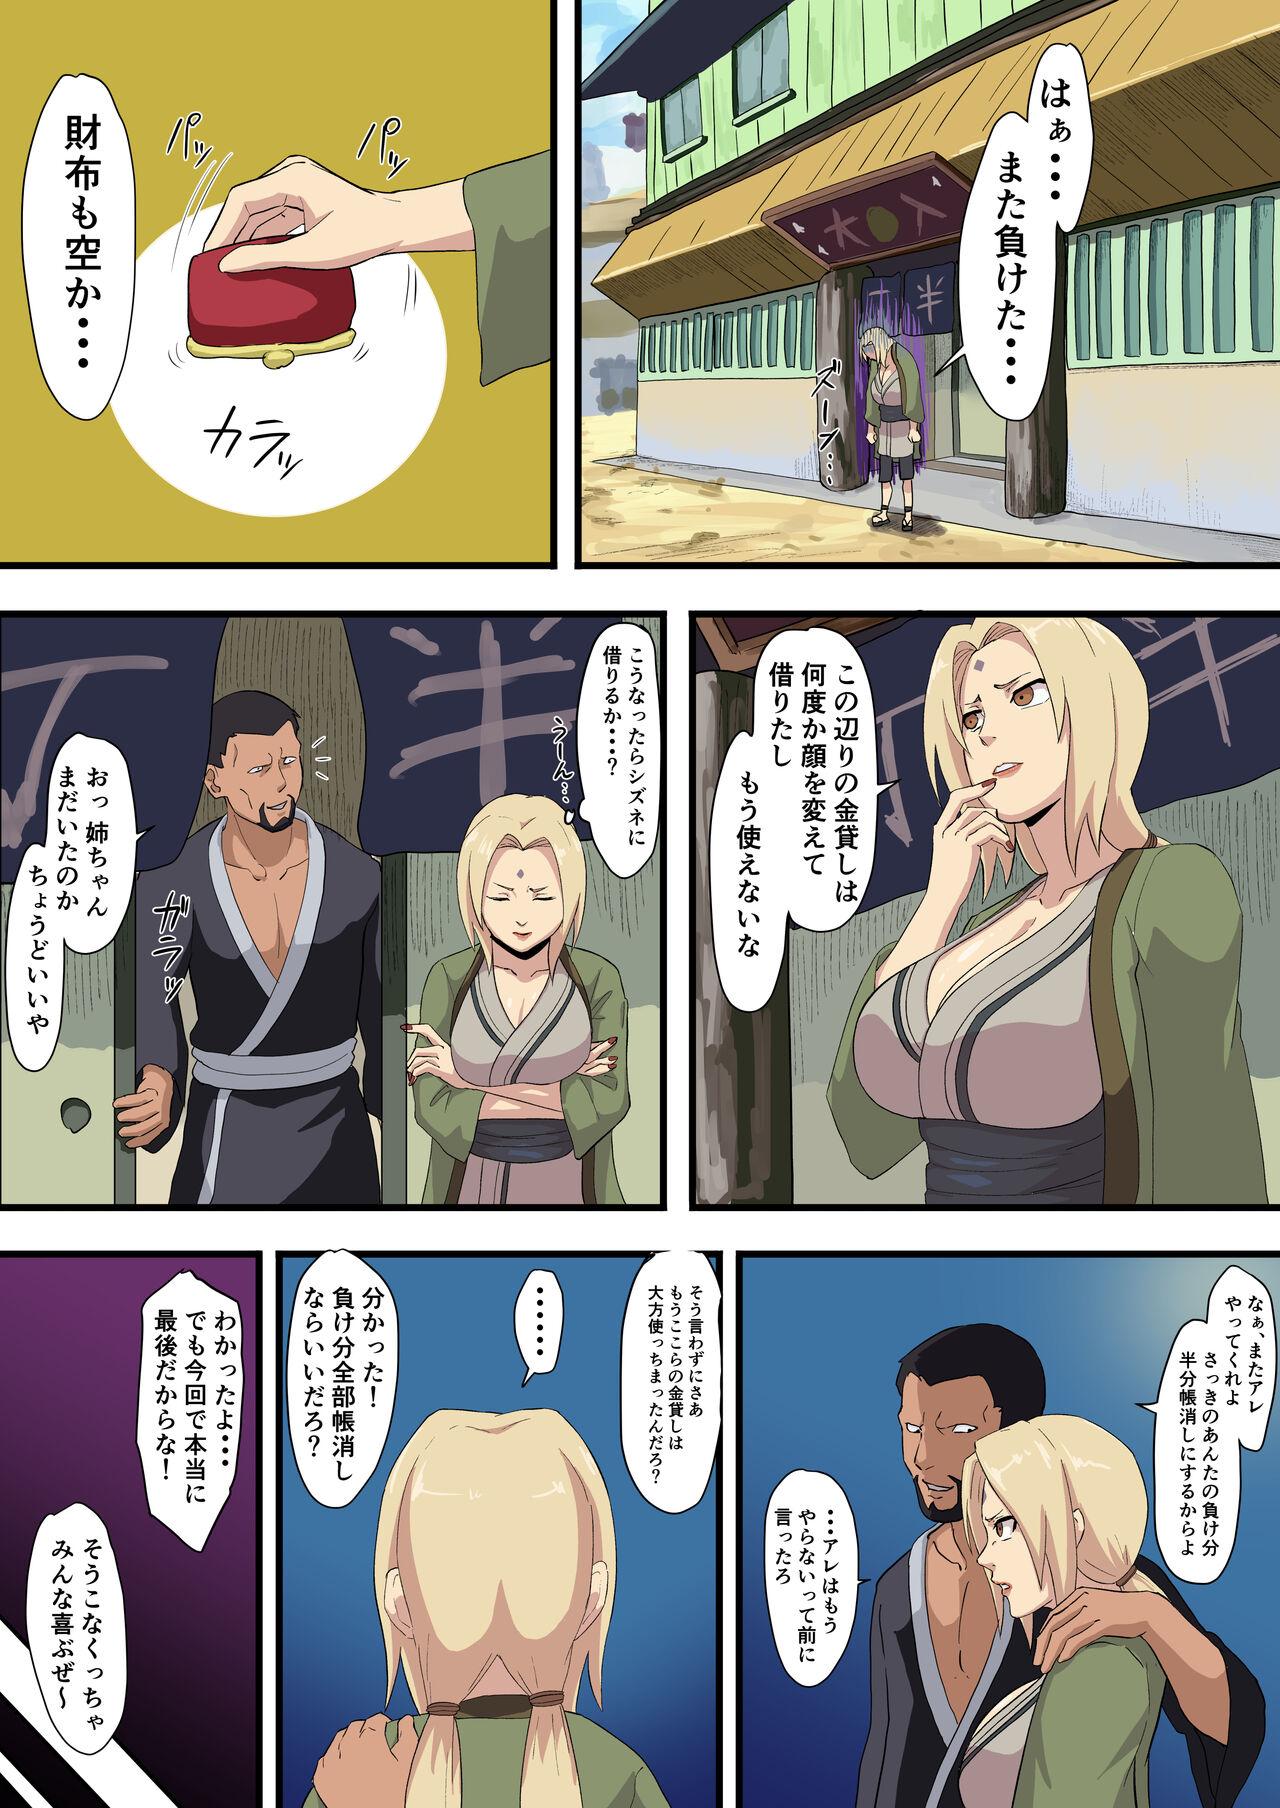 Stepsister Tsunade paying debt - Naruto Cams - Page 2